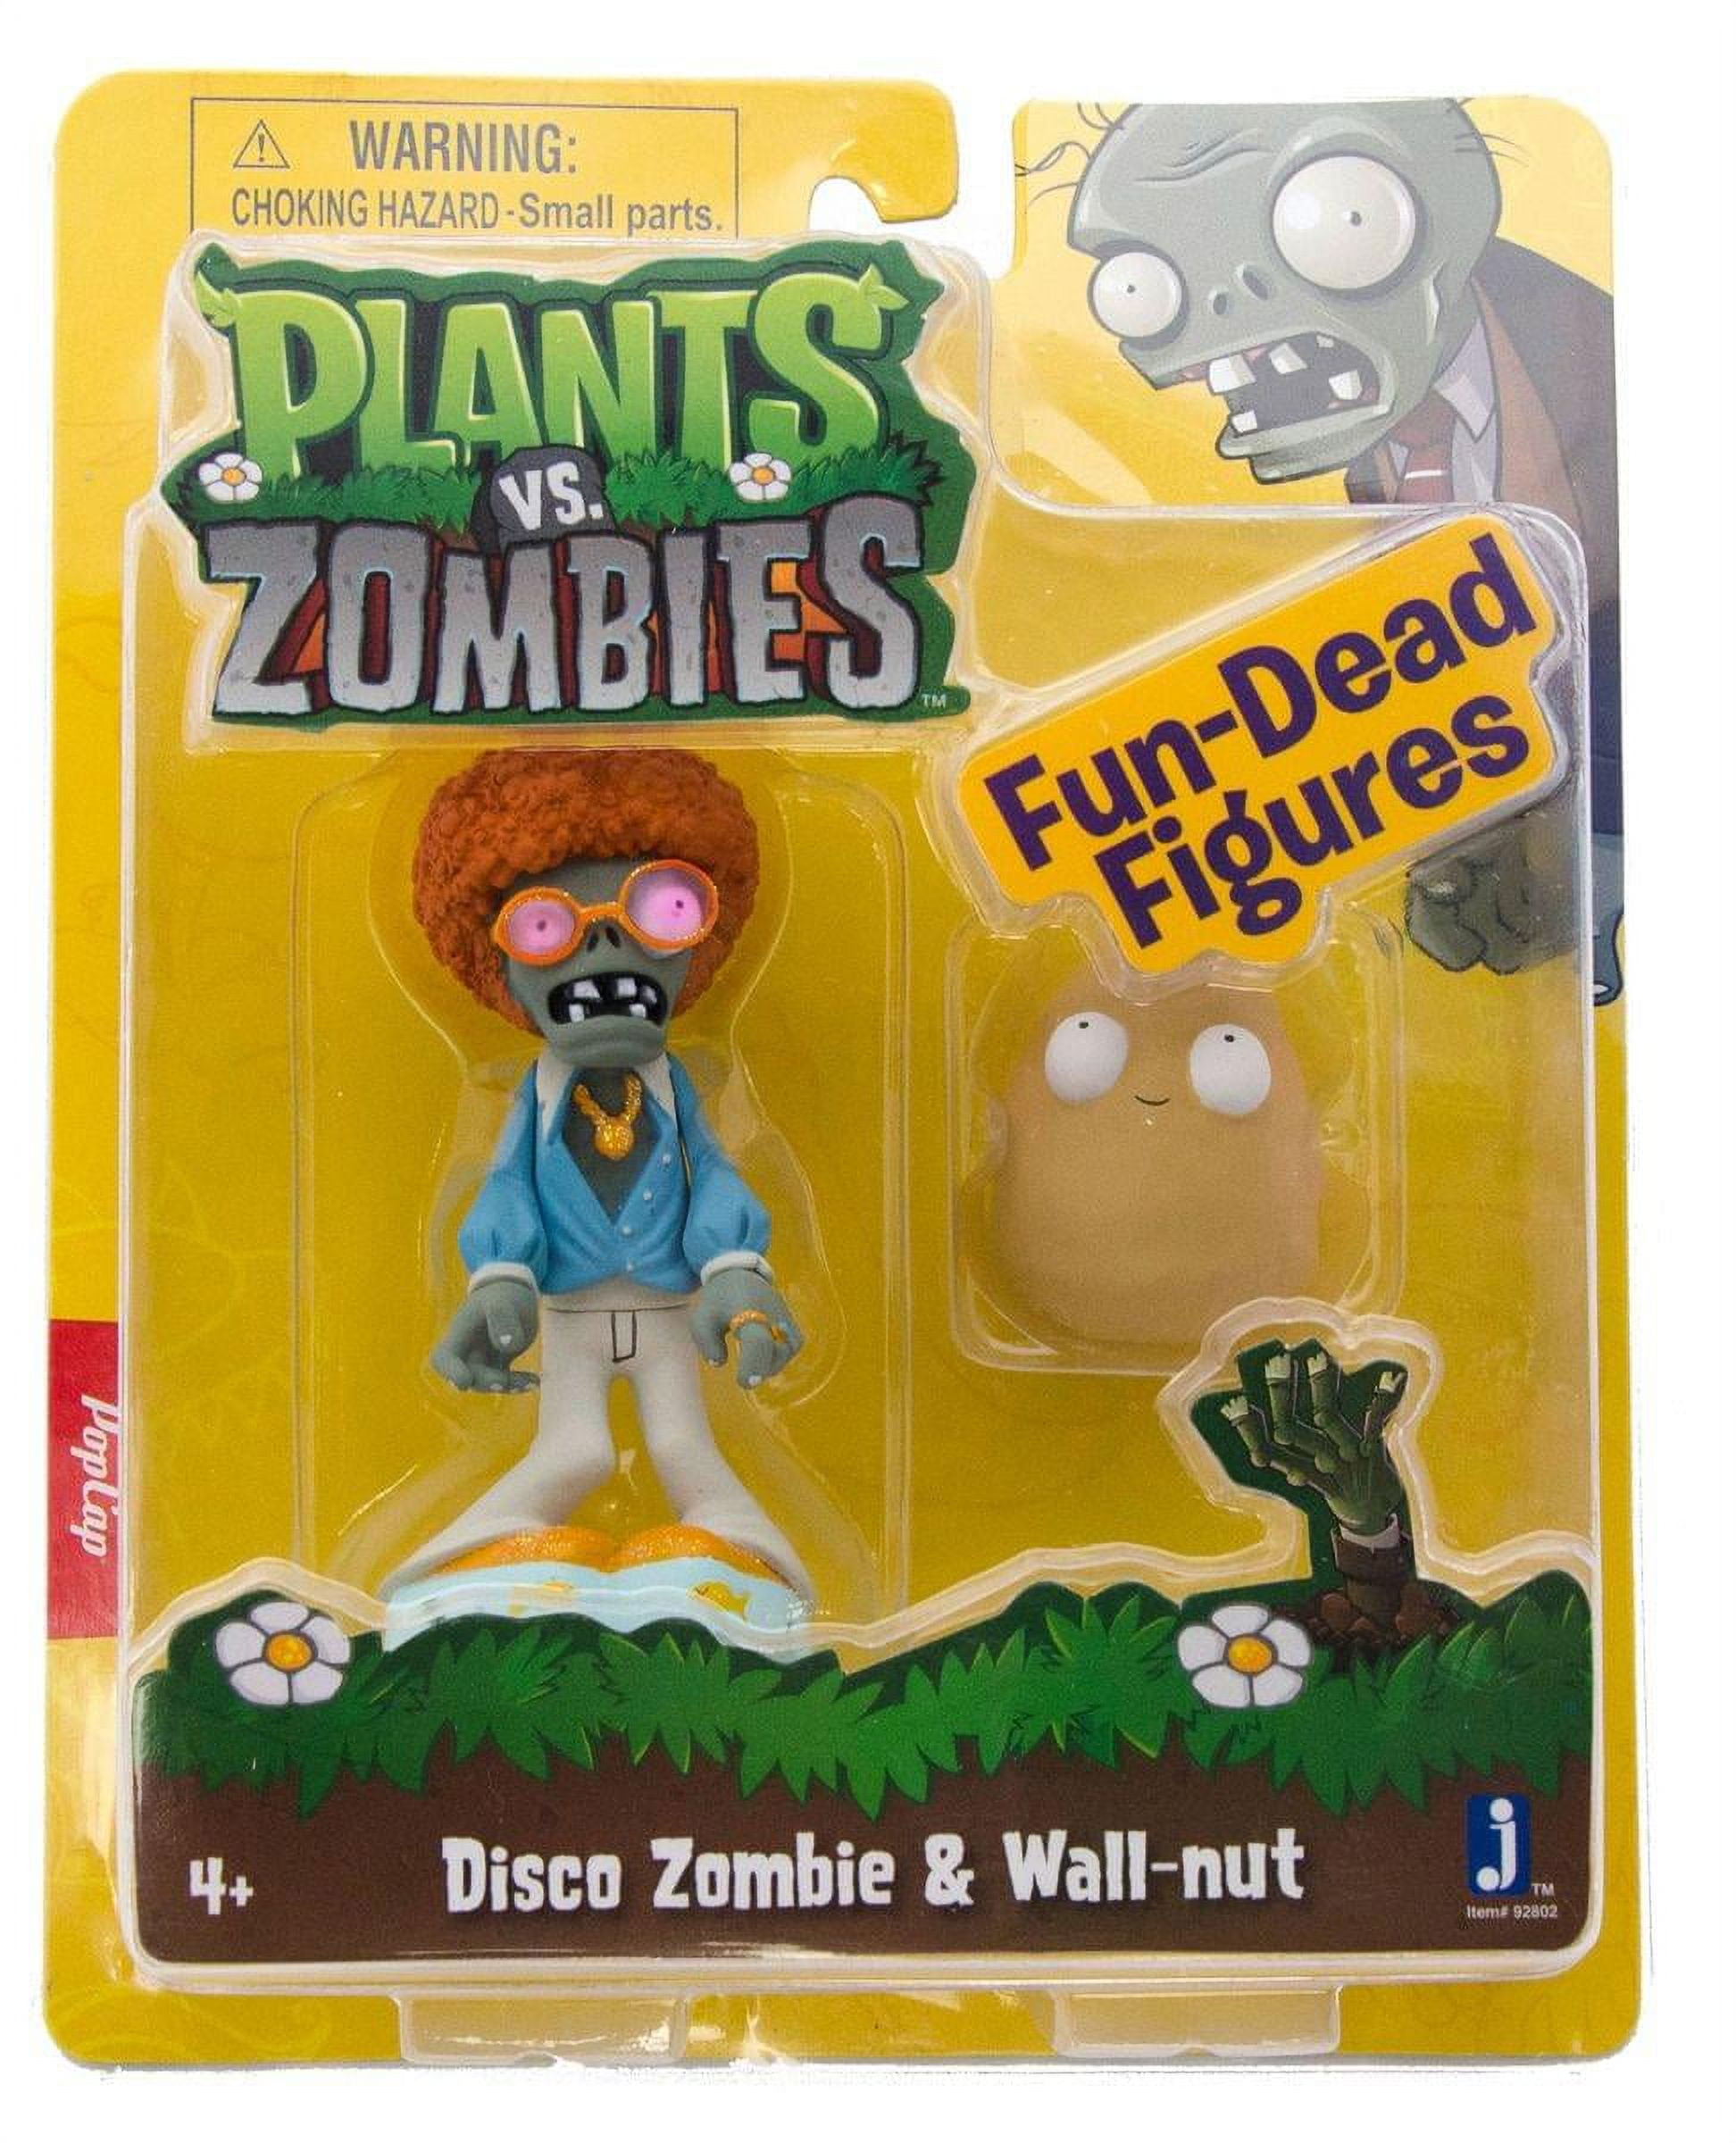 Plants vs. Zombies Fun-Dead Figures Disco Zombie & Wallnut Figure 2-Pack 